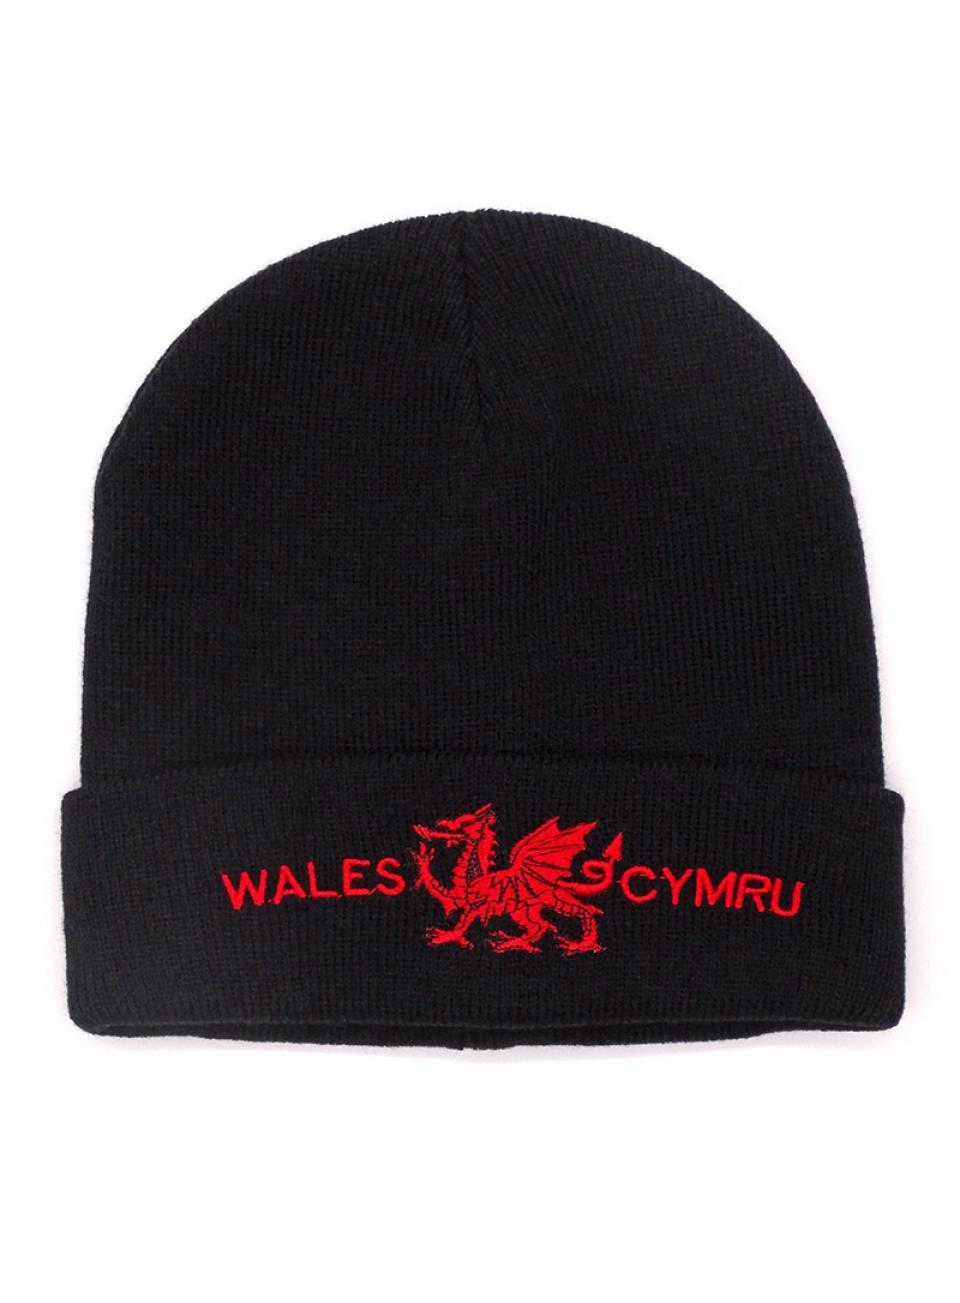 Wales/Cymru Ski Hat 